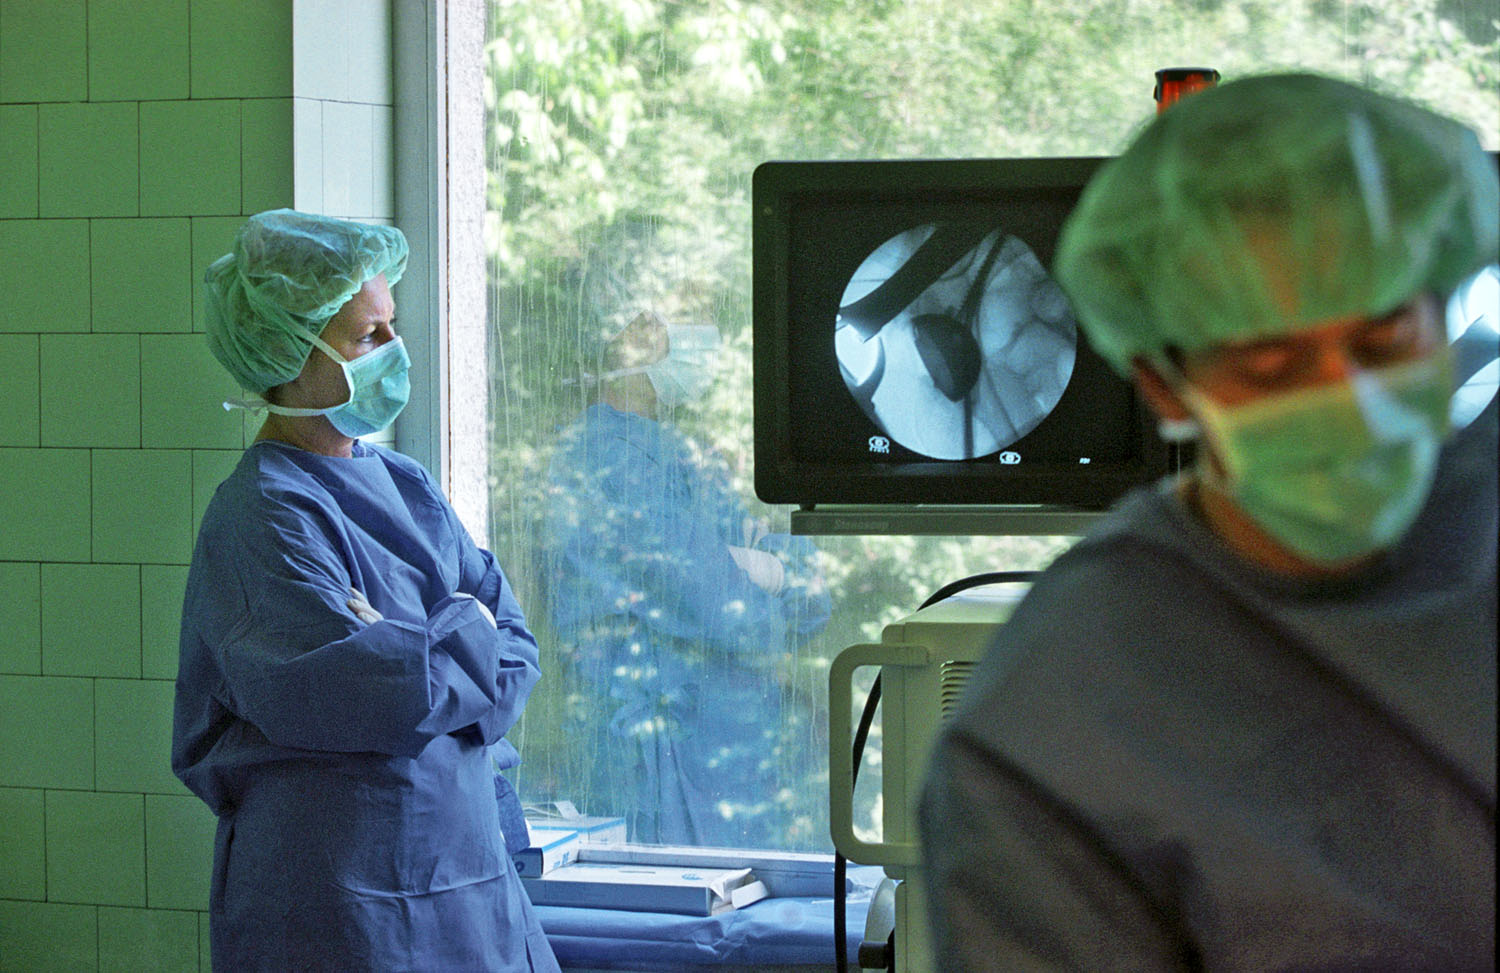 Csípőprotézis beépítésére készülnek az orvosok az Uzsoki kórházban